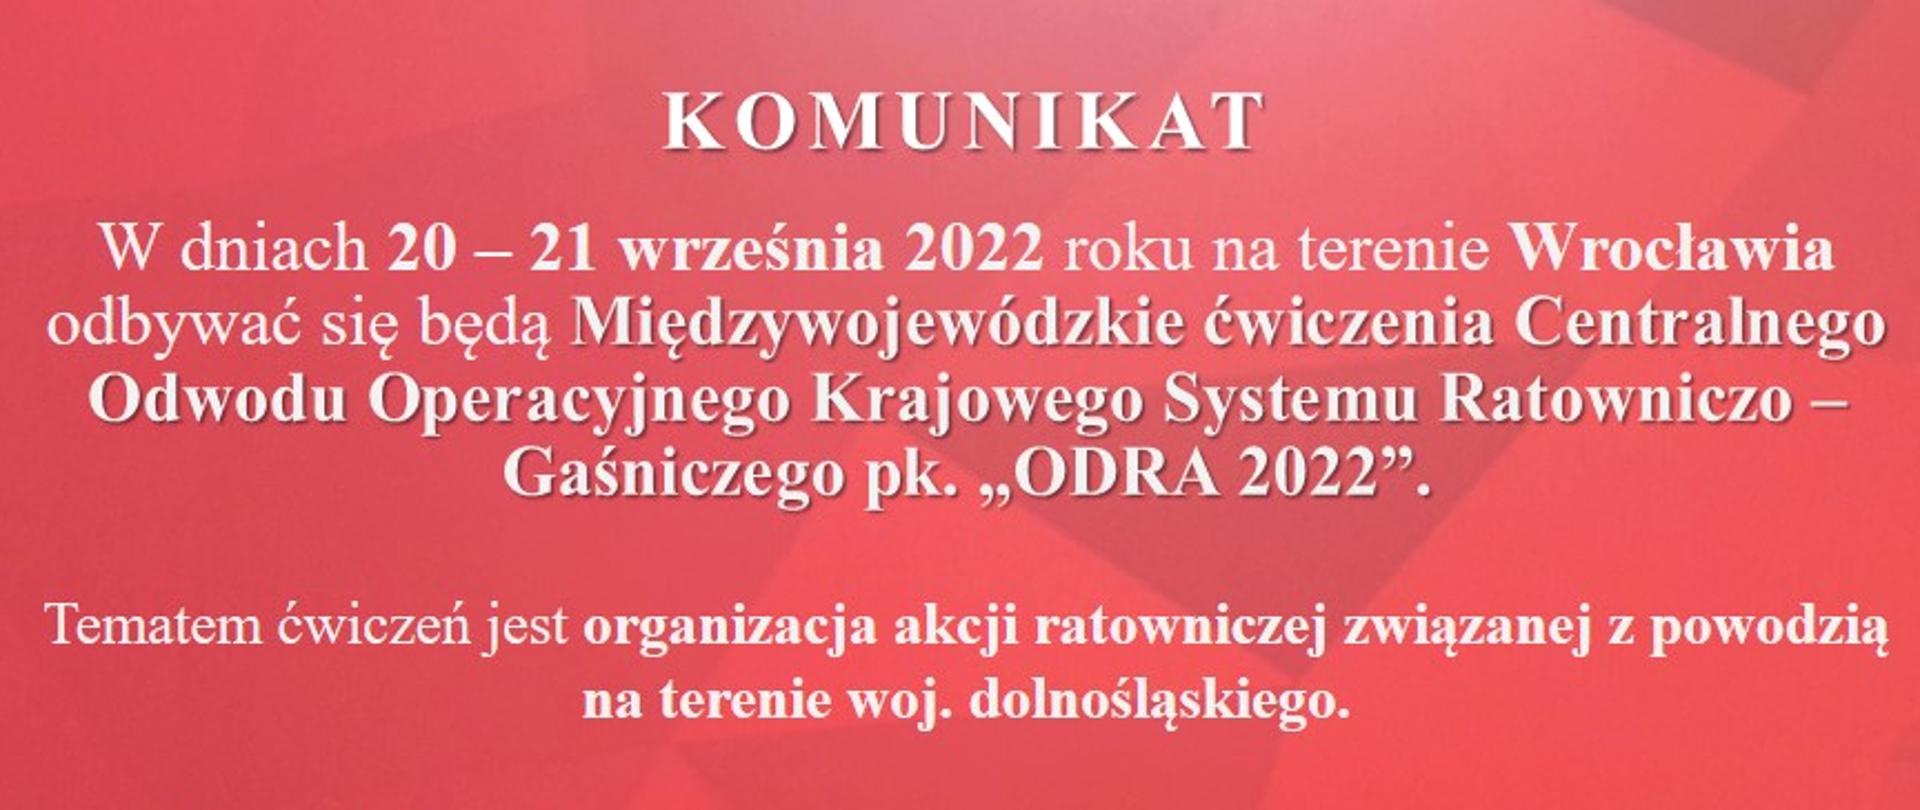 Banery_na_media_społecznościowe_ODRA_2022-1